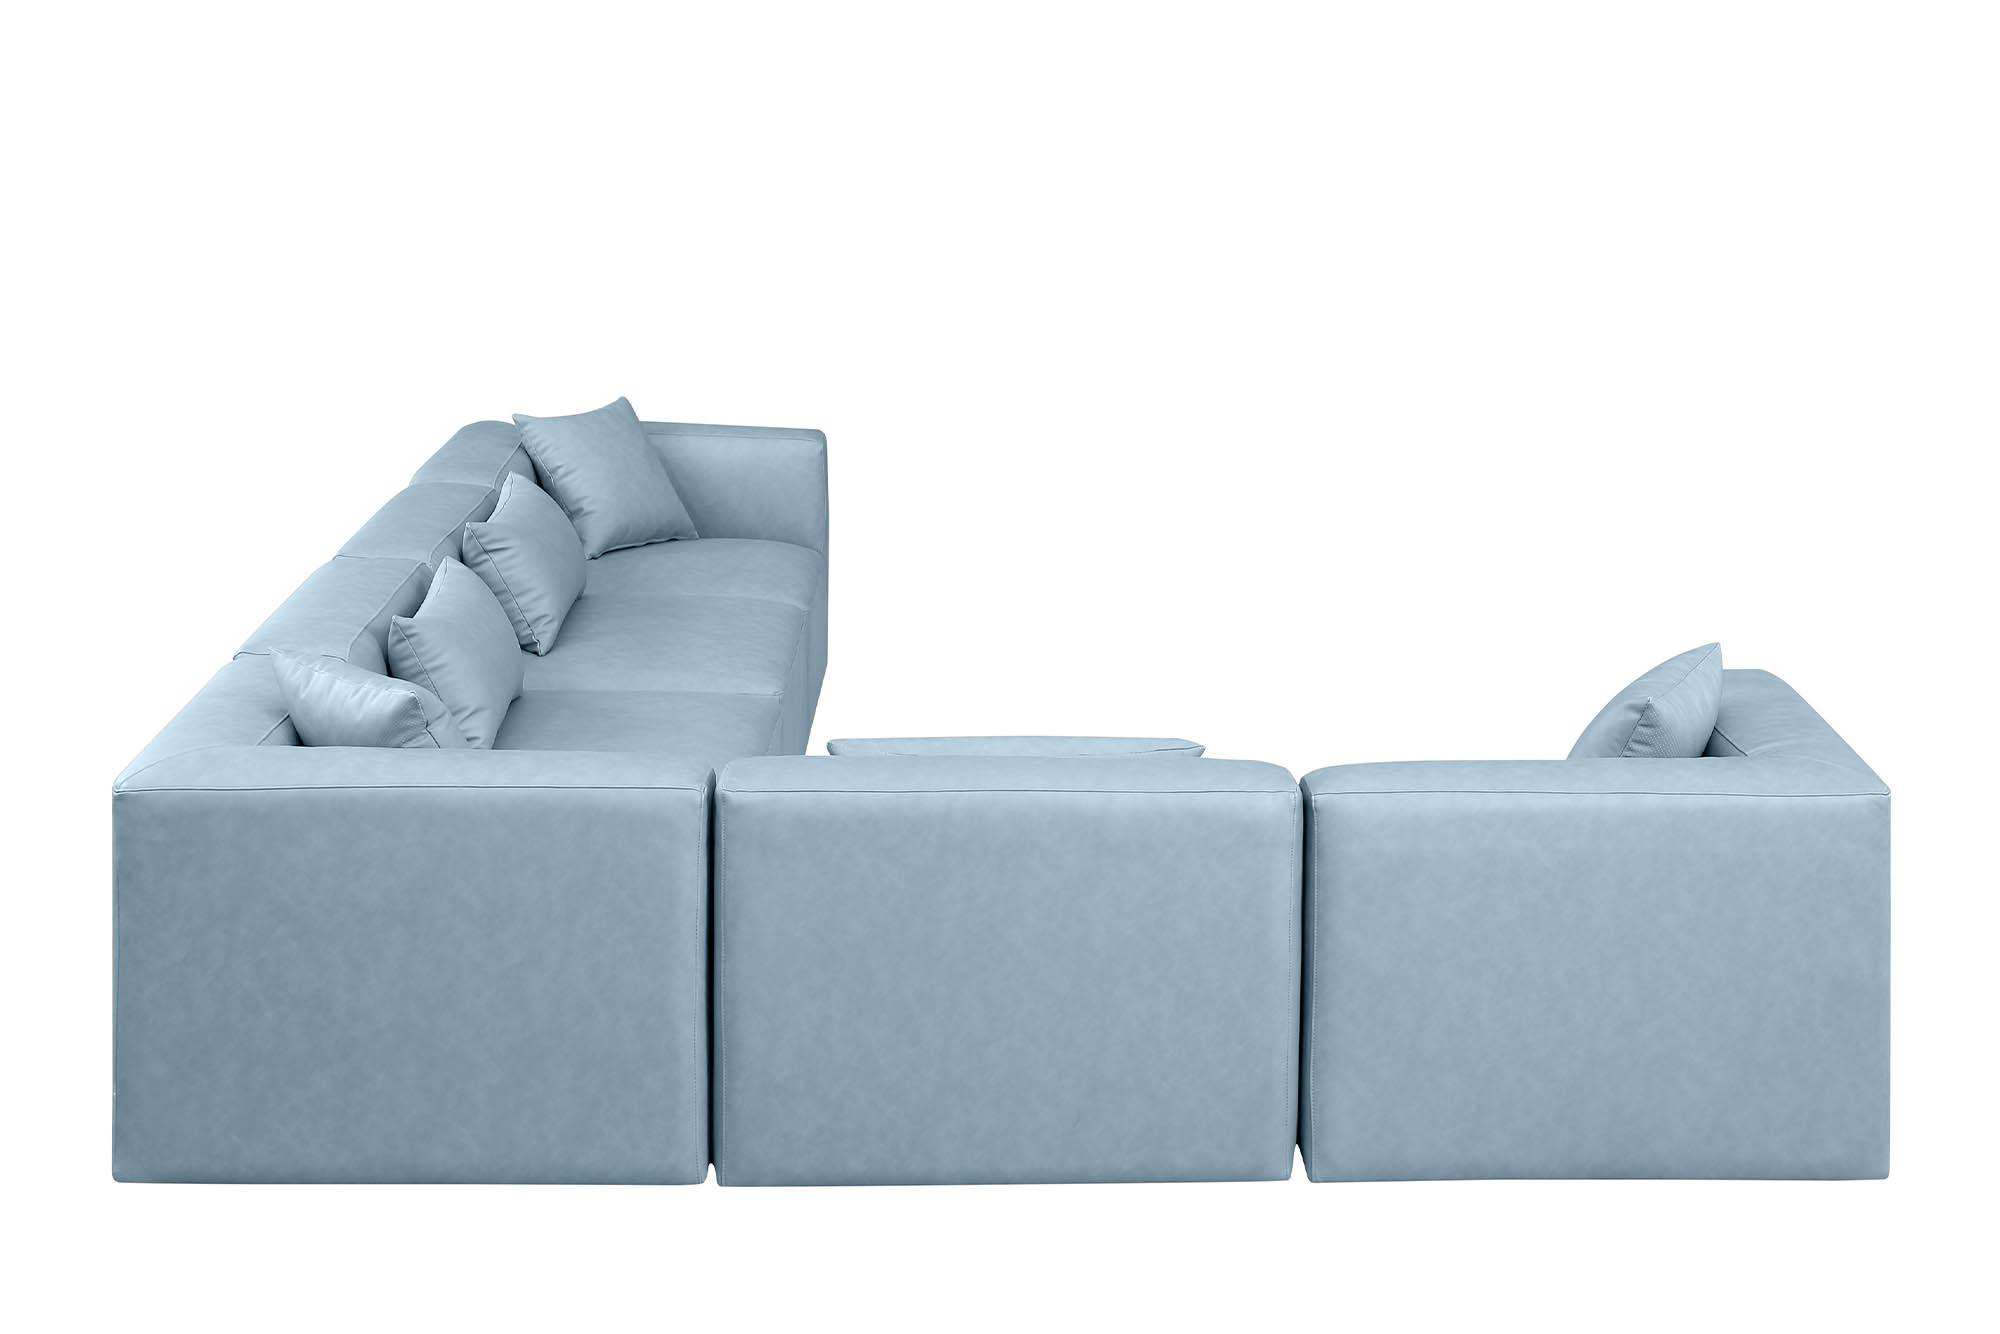 

    
Meridian Furniture CUBE 668LtBlu-Sec6A Modular Sectional Sofa Light Blue 668LtBlu-Sec6A
